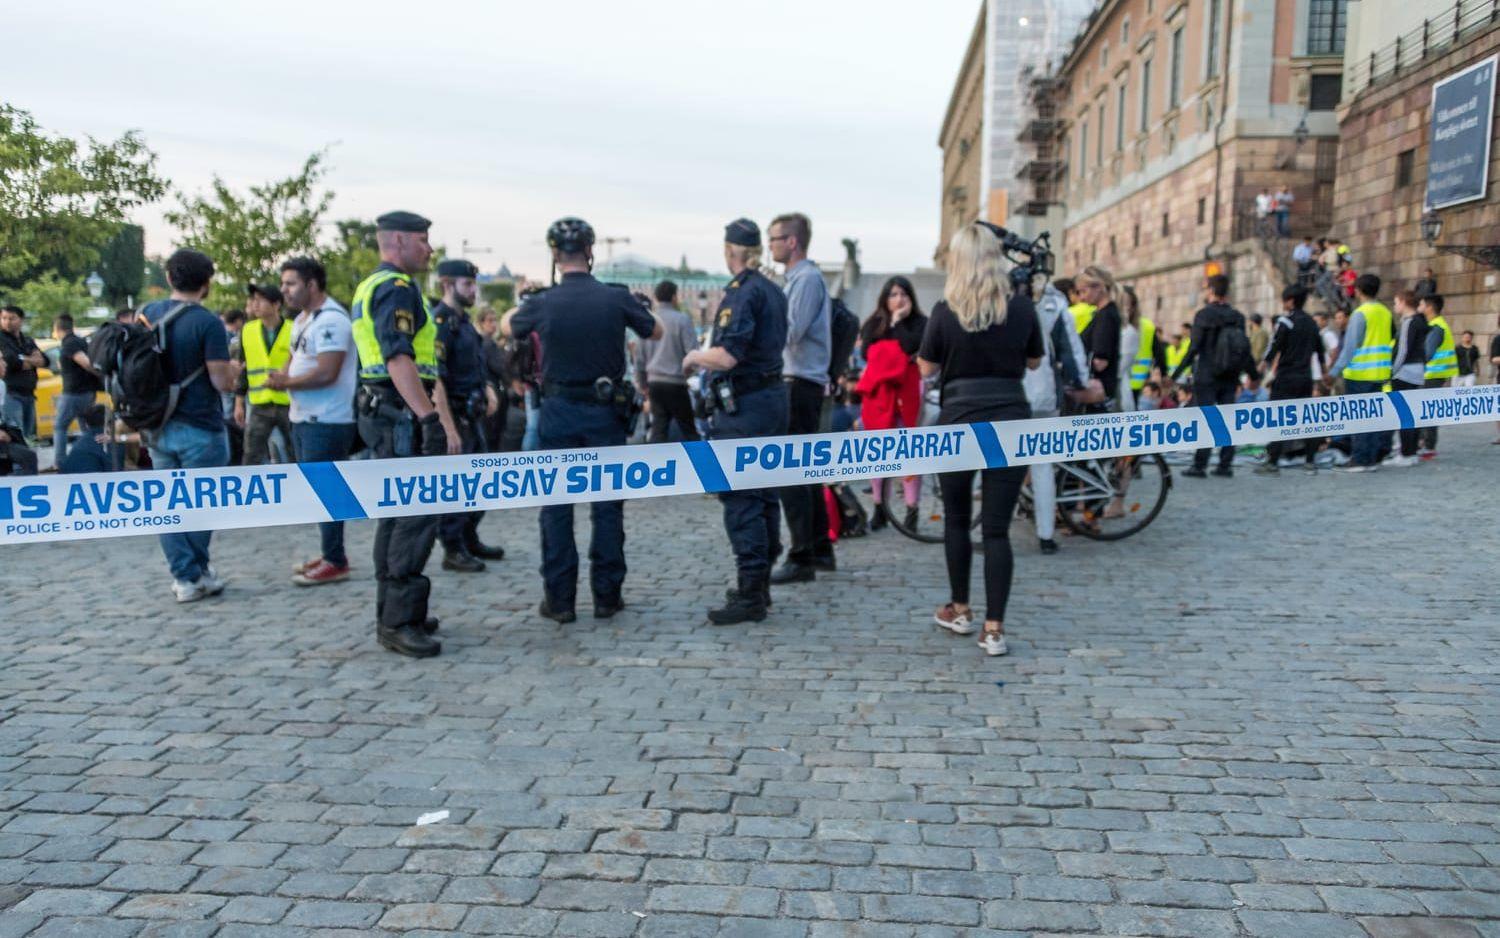 Polisen spärrade av platsen efter att tumult uppstått mellan attackerare och demonstranter.Bild: Pelle T Nilsson / Stella Pictures
